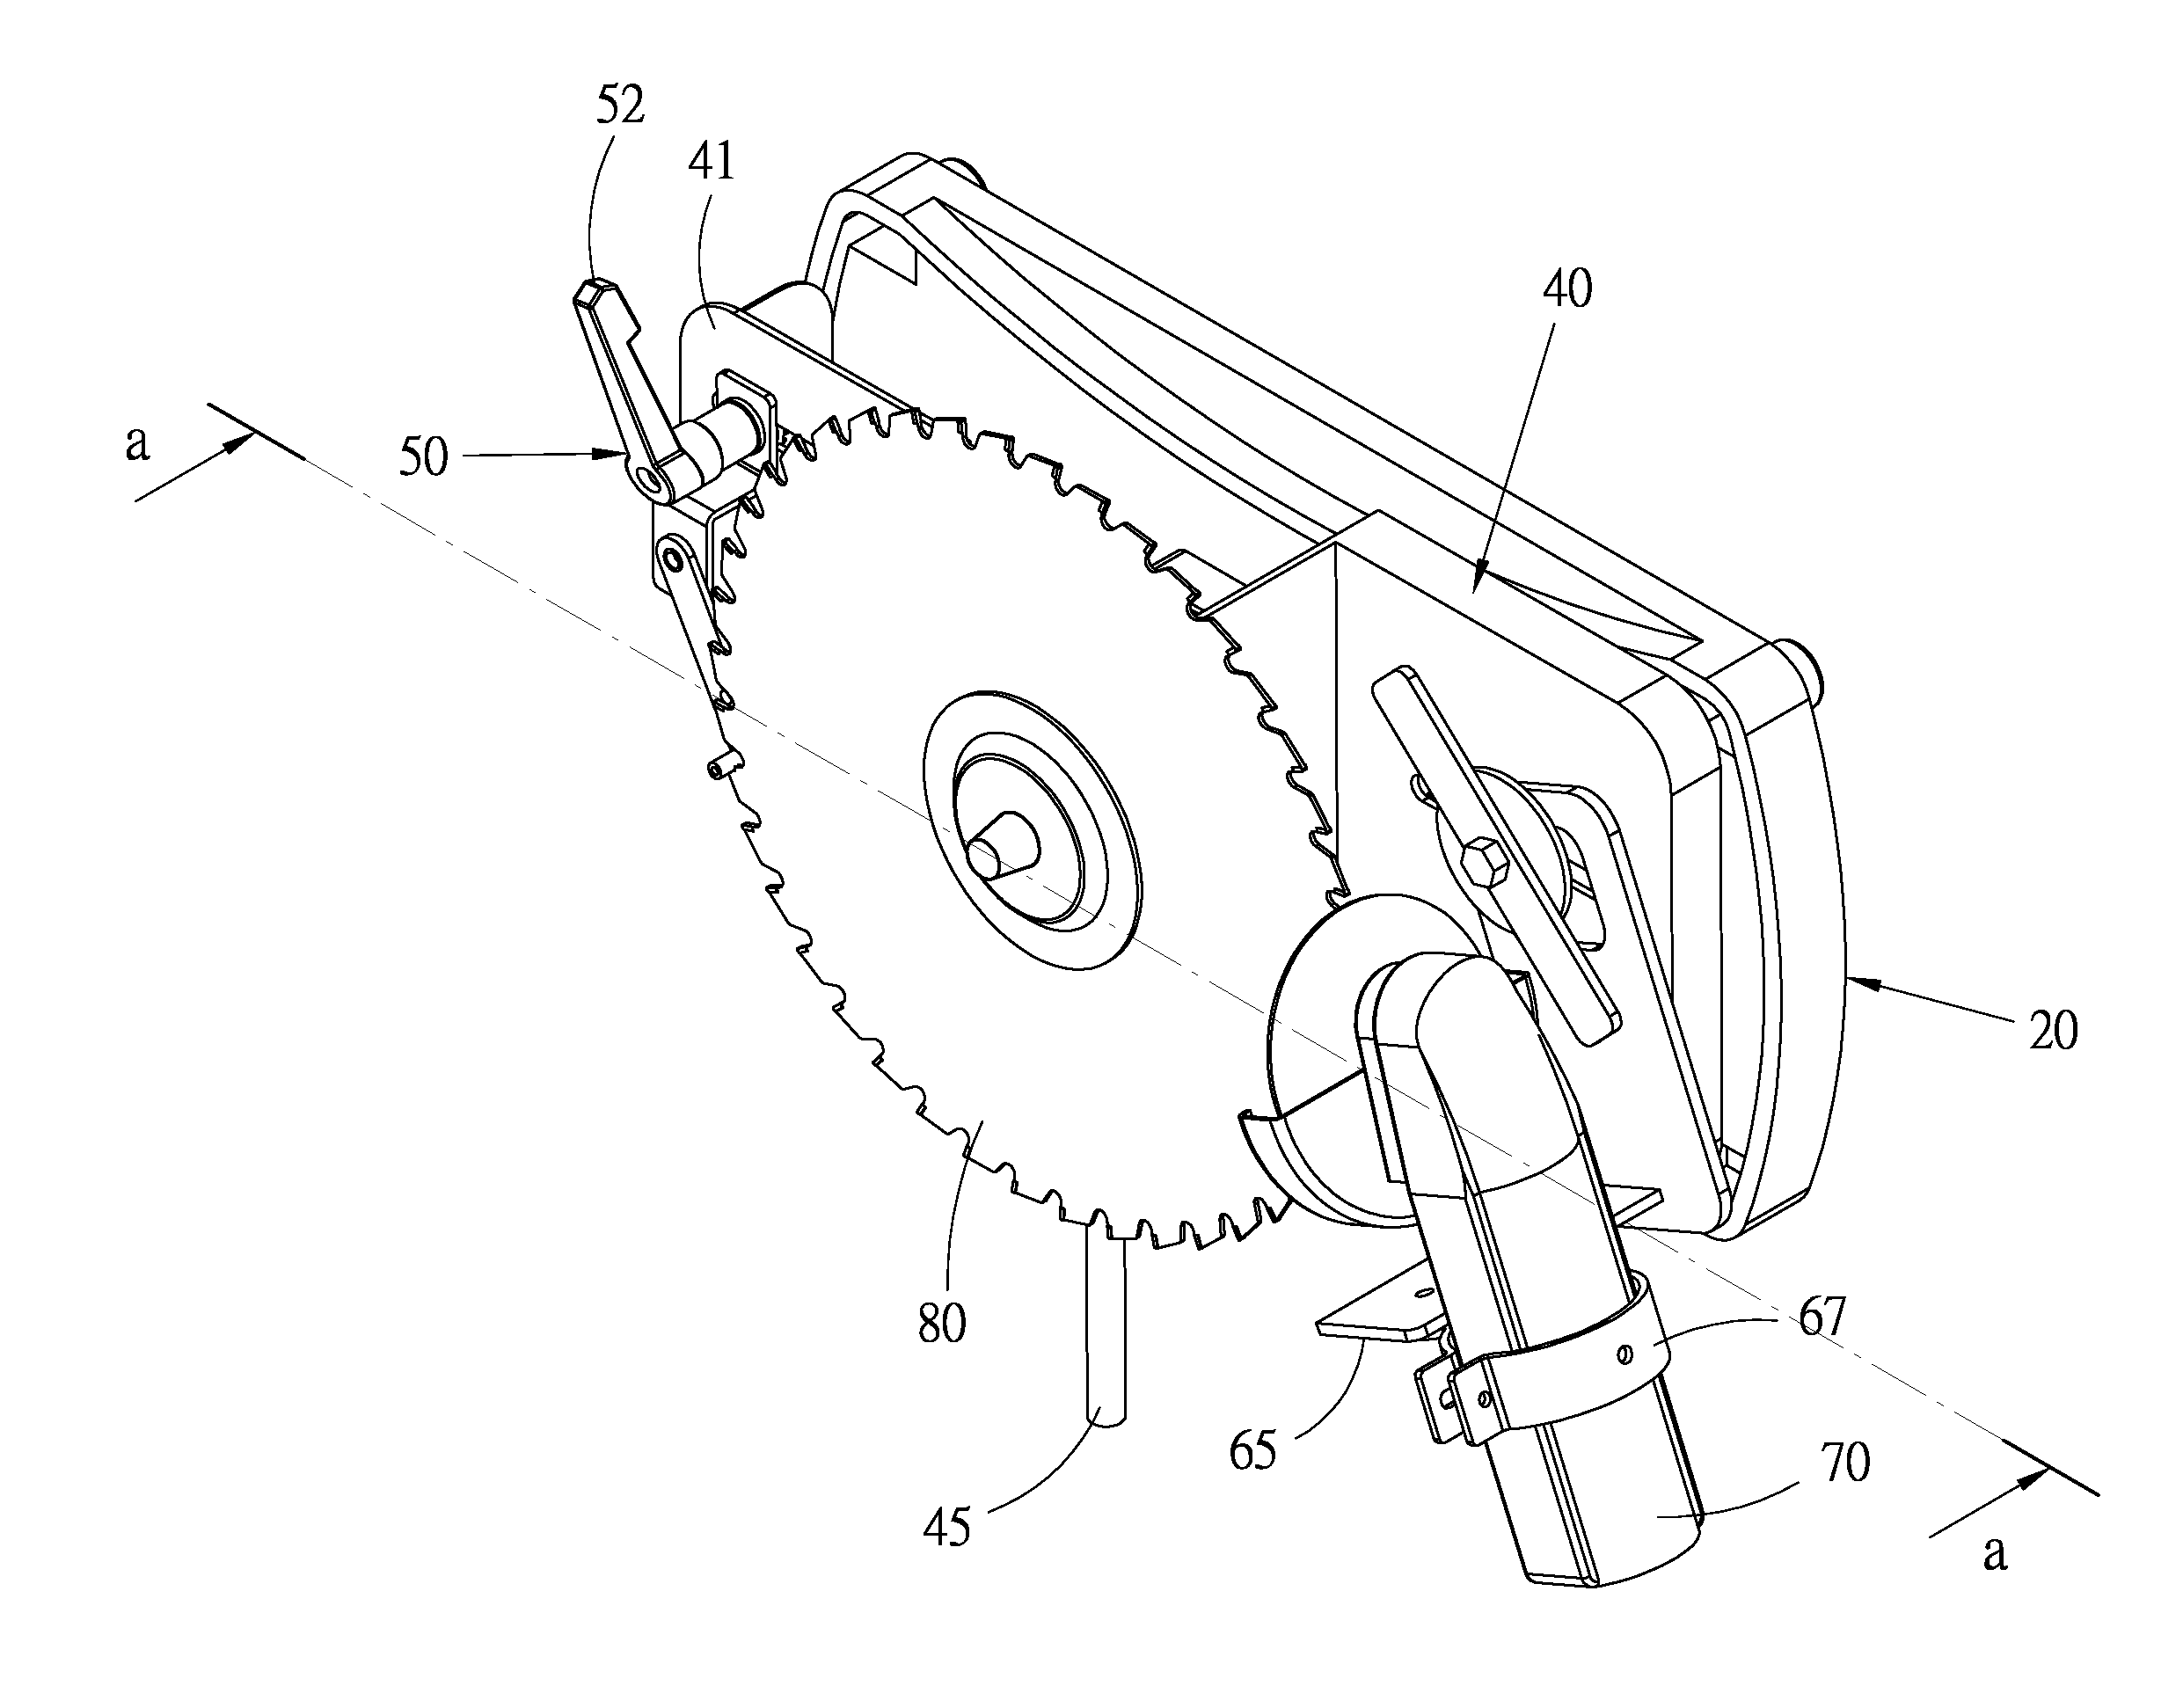 Bed-type circular saw blade grinder